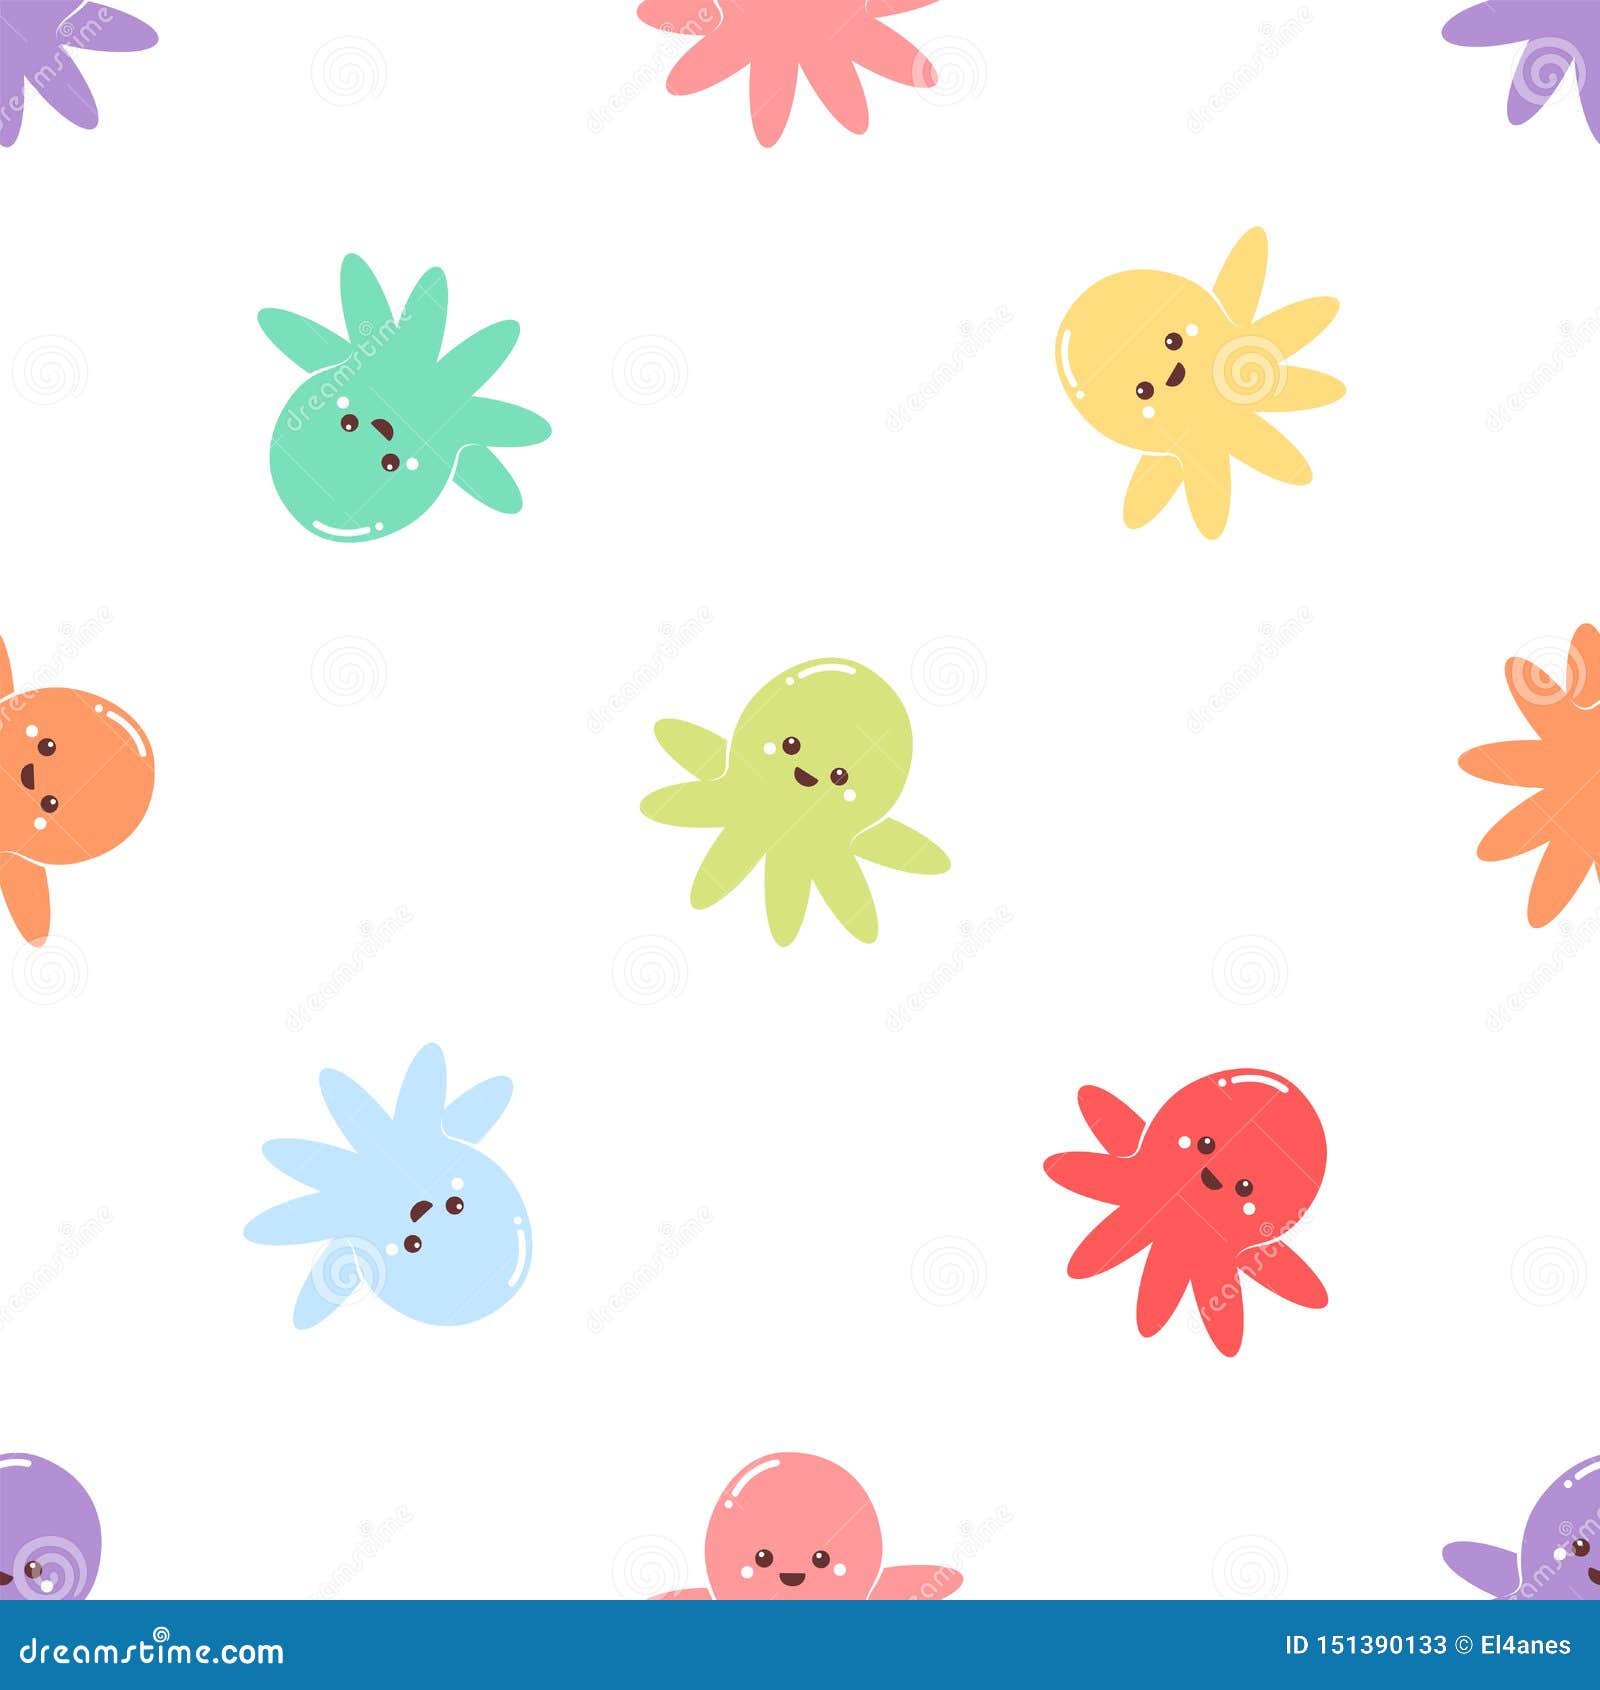 Cute octopus pattern stock vector. Illustration of wallpaper ...